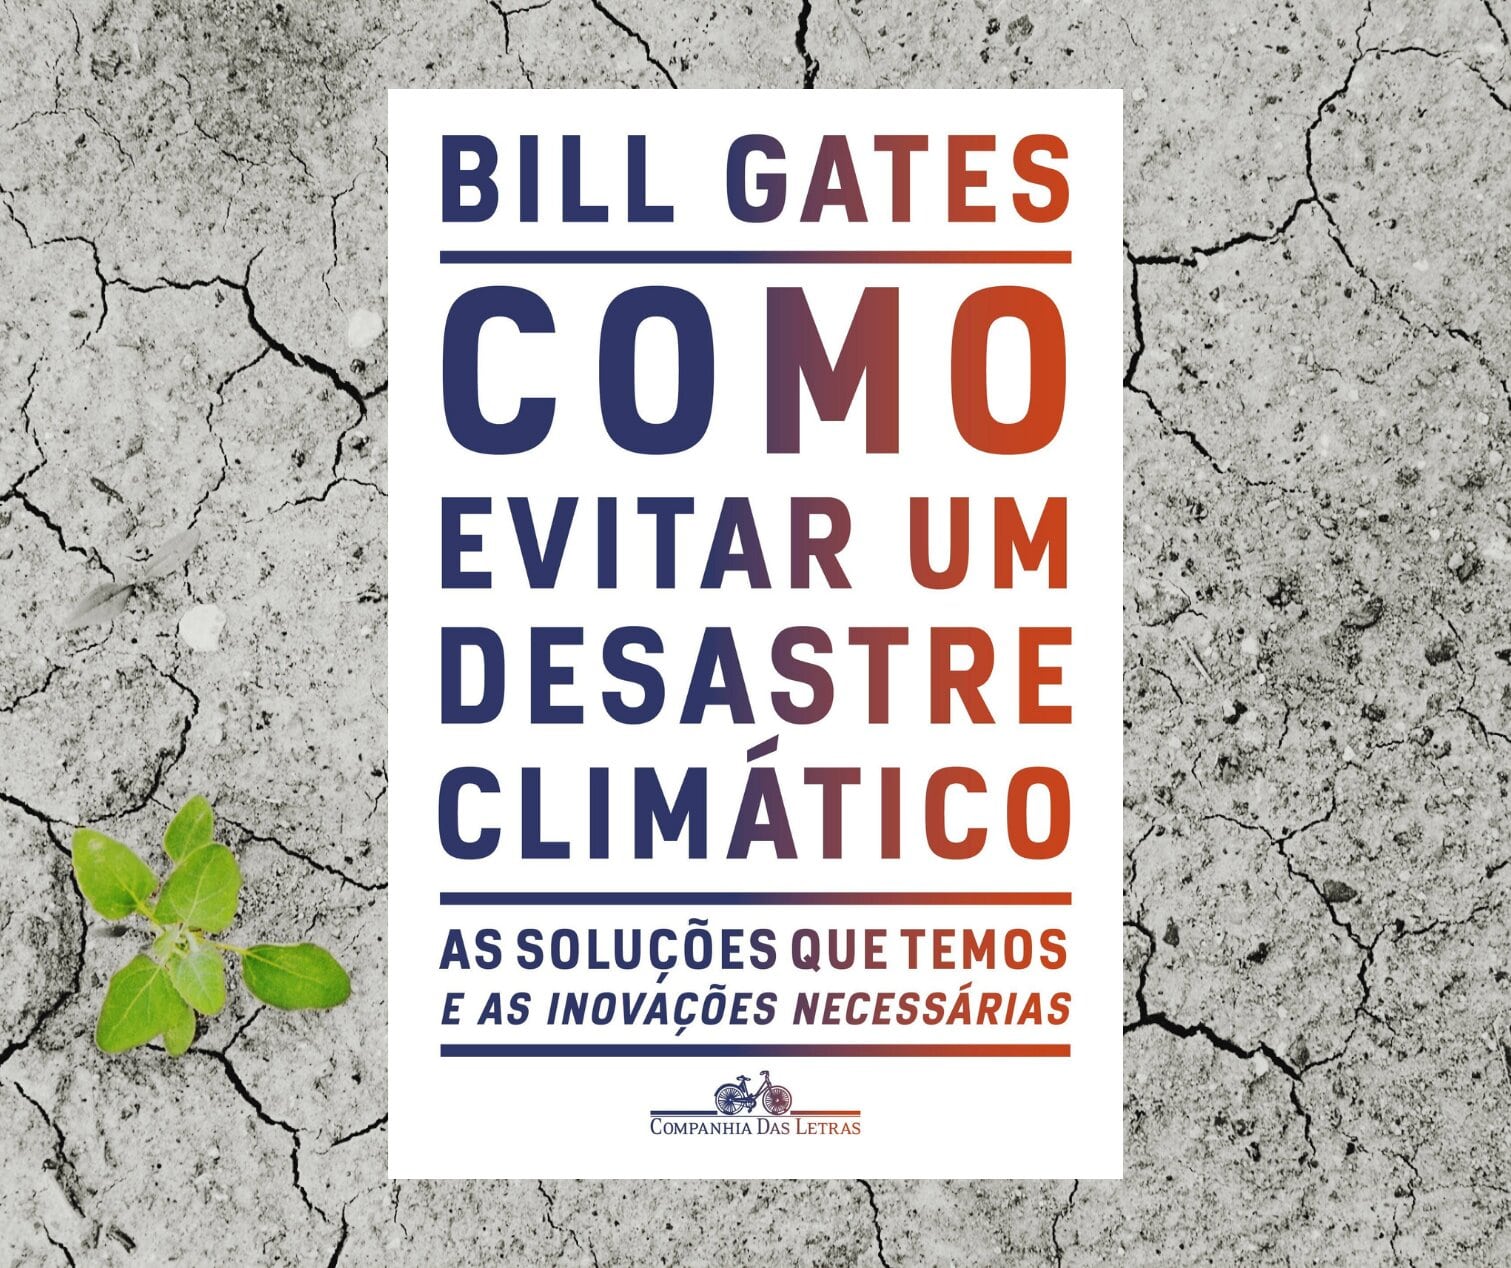 Resenha: Como evitar um desastre climático, de Bill Gates